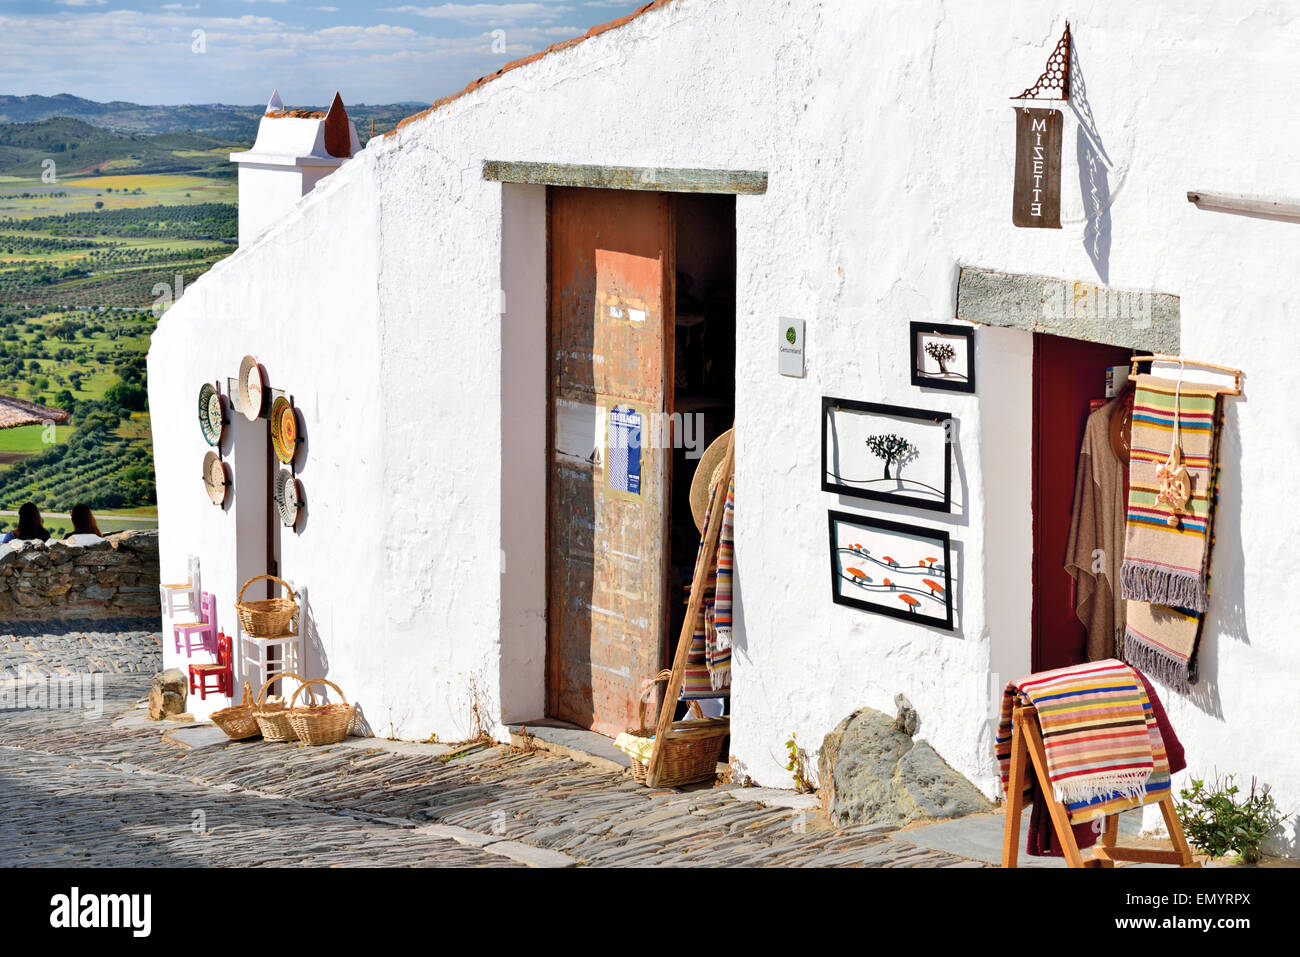 Le Portugal, l'Alentejo : des boutiques artisanales et panoramique sur le village historique de Monsaraz Banque D'Images